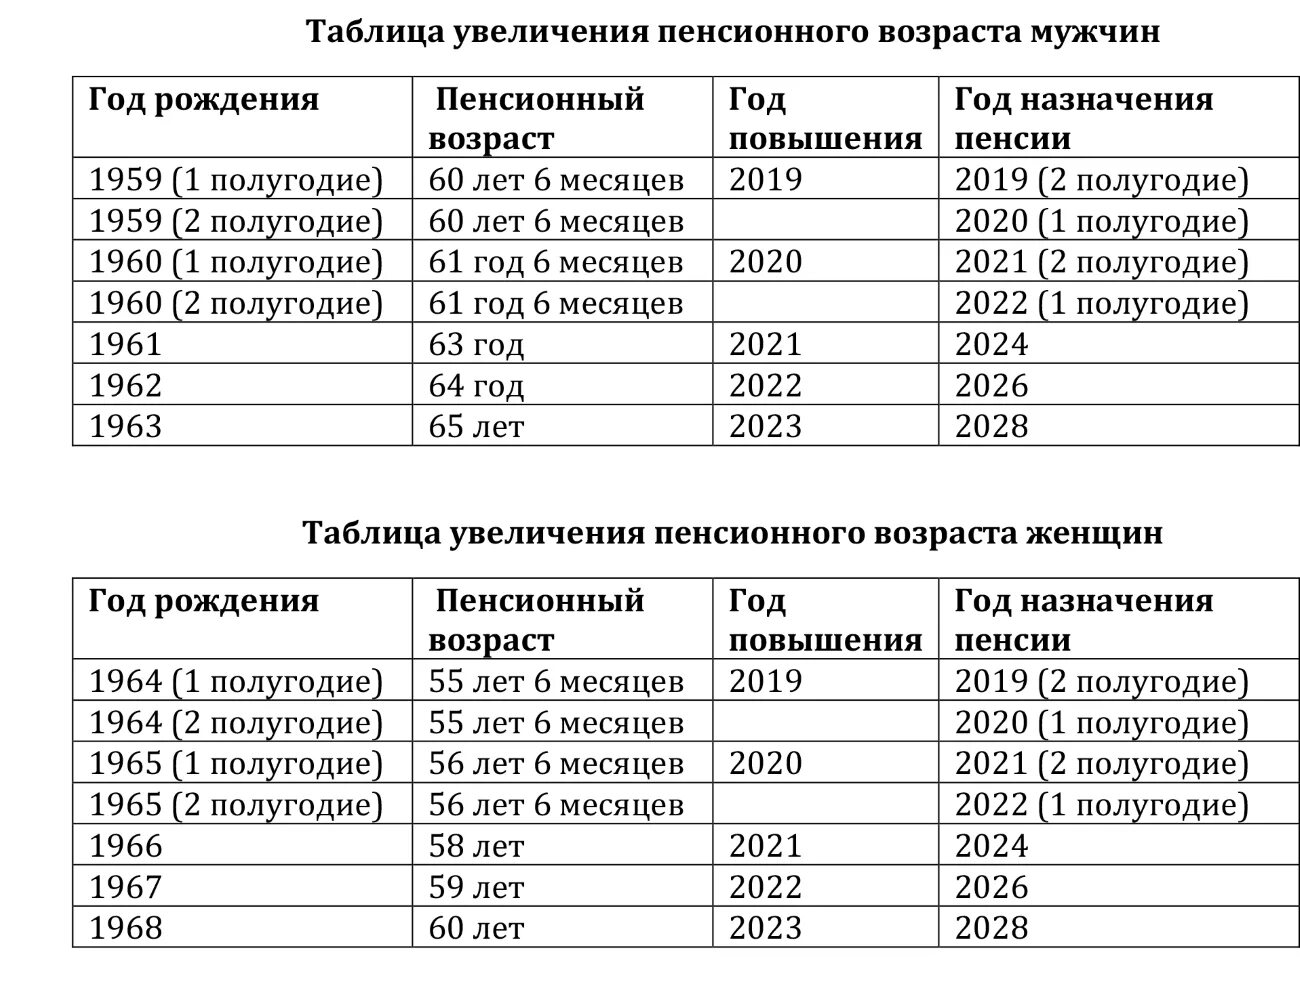 Повышение пенсионного возраста таблица. Пенсионный Возраст в России таблица по годам. Таблица прибавки пенсионного возраста по годам. Таблица пенсионного возраста по годам России по годам.